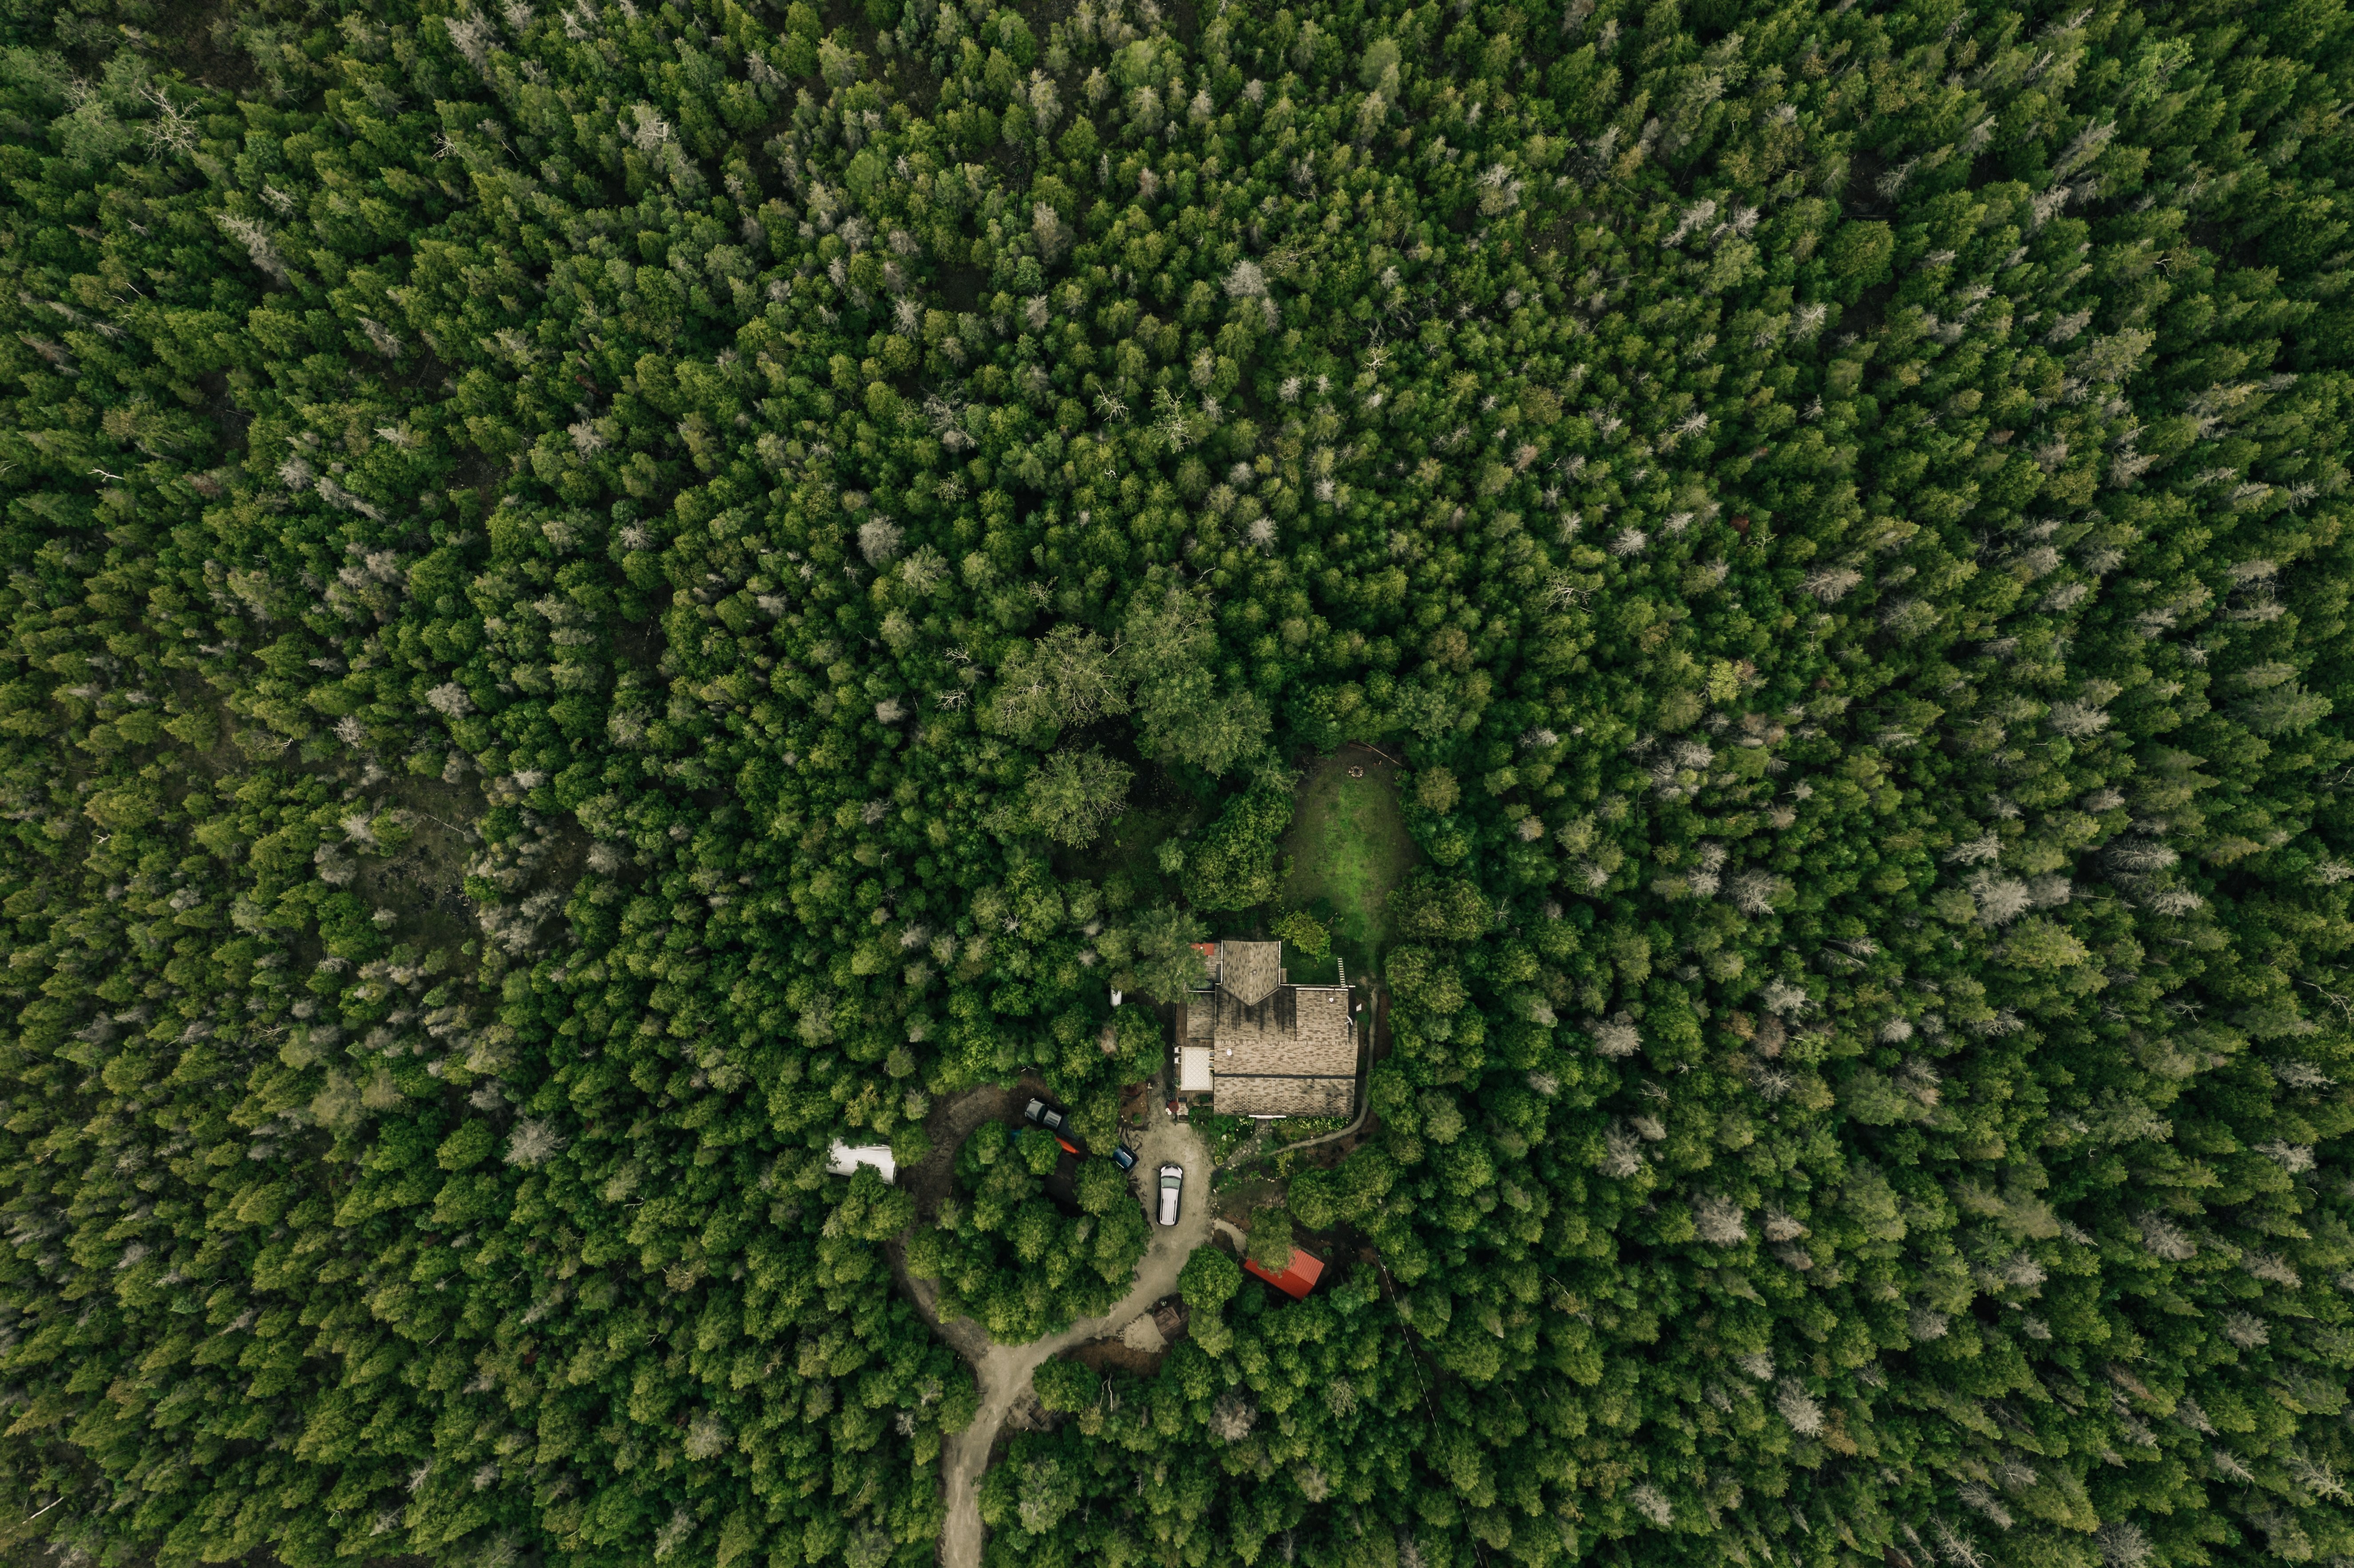 Casa situada dentro de uma densa floresta foto